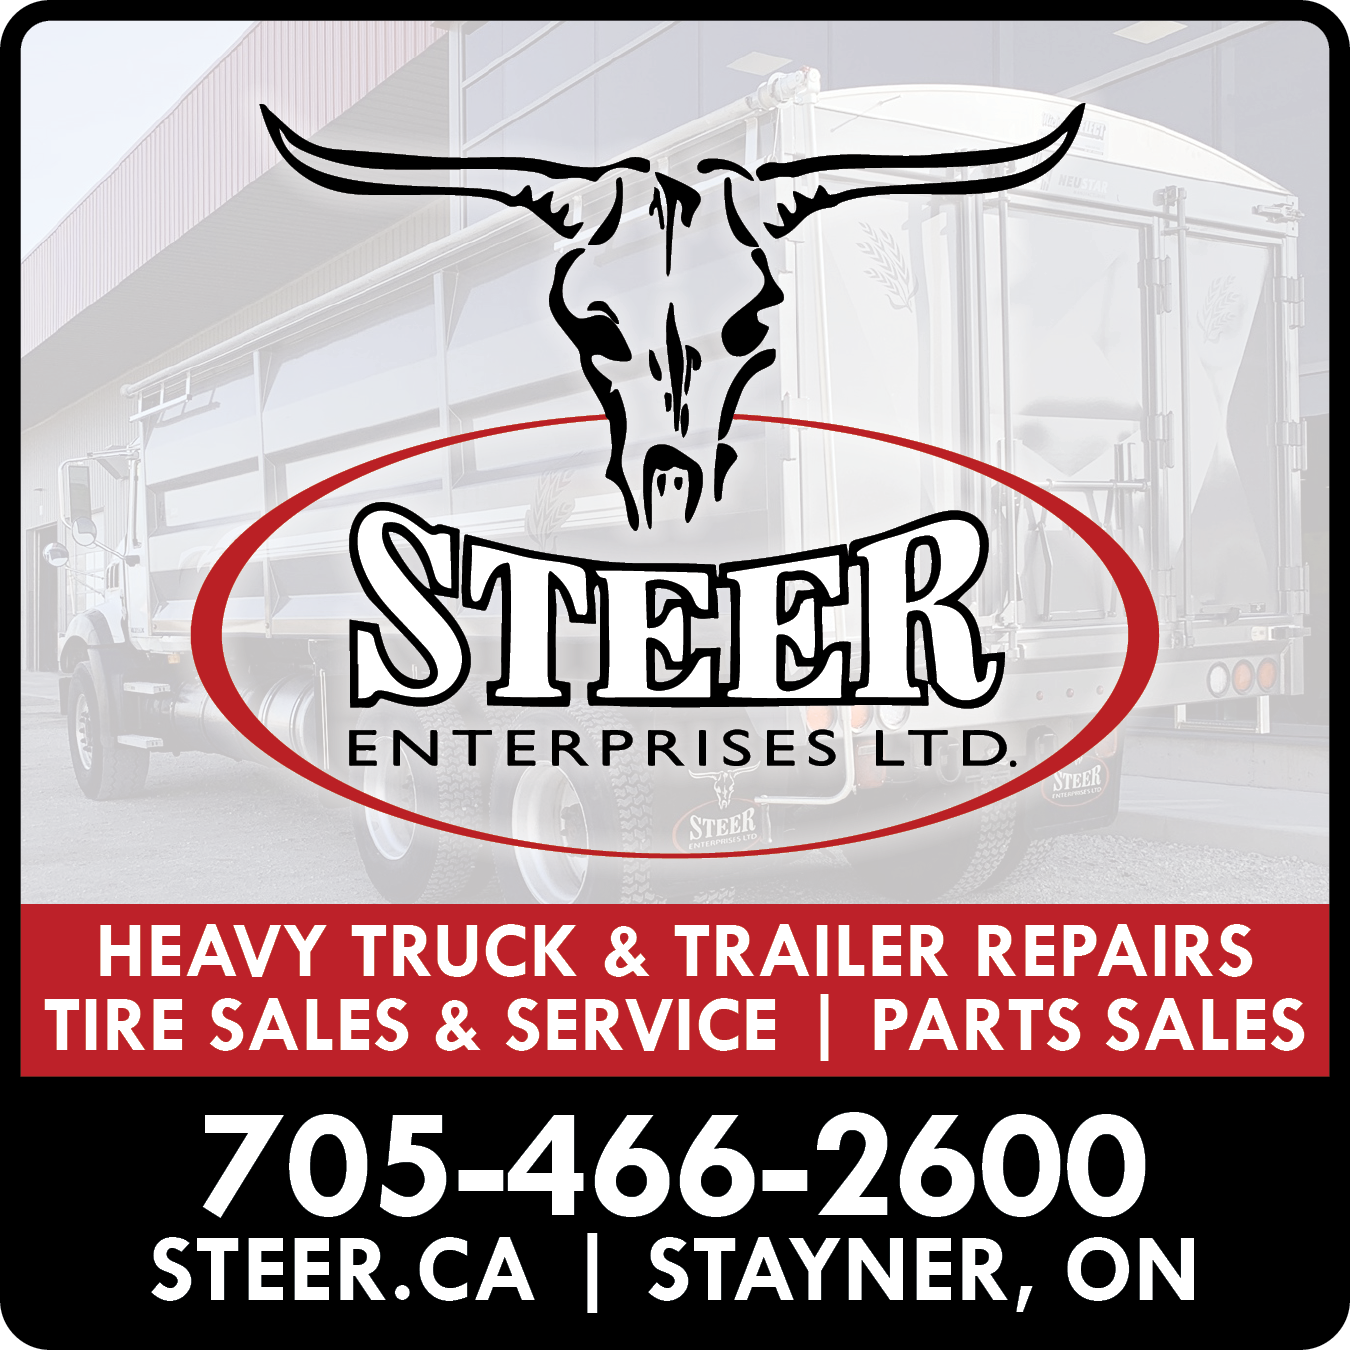 Steer Enterprises Ltd